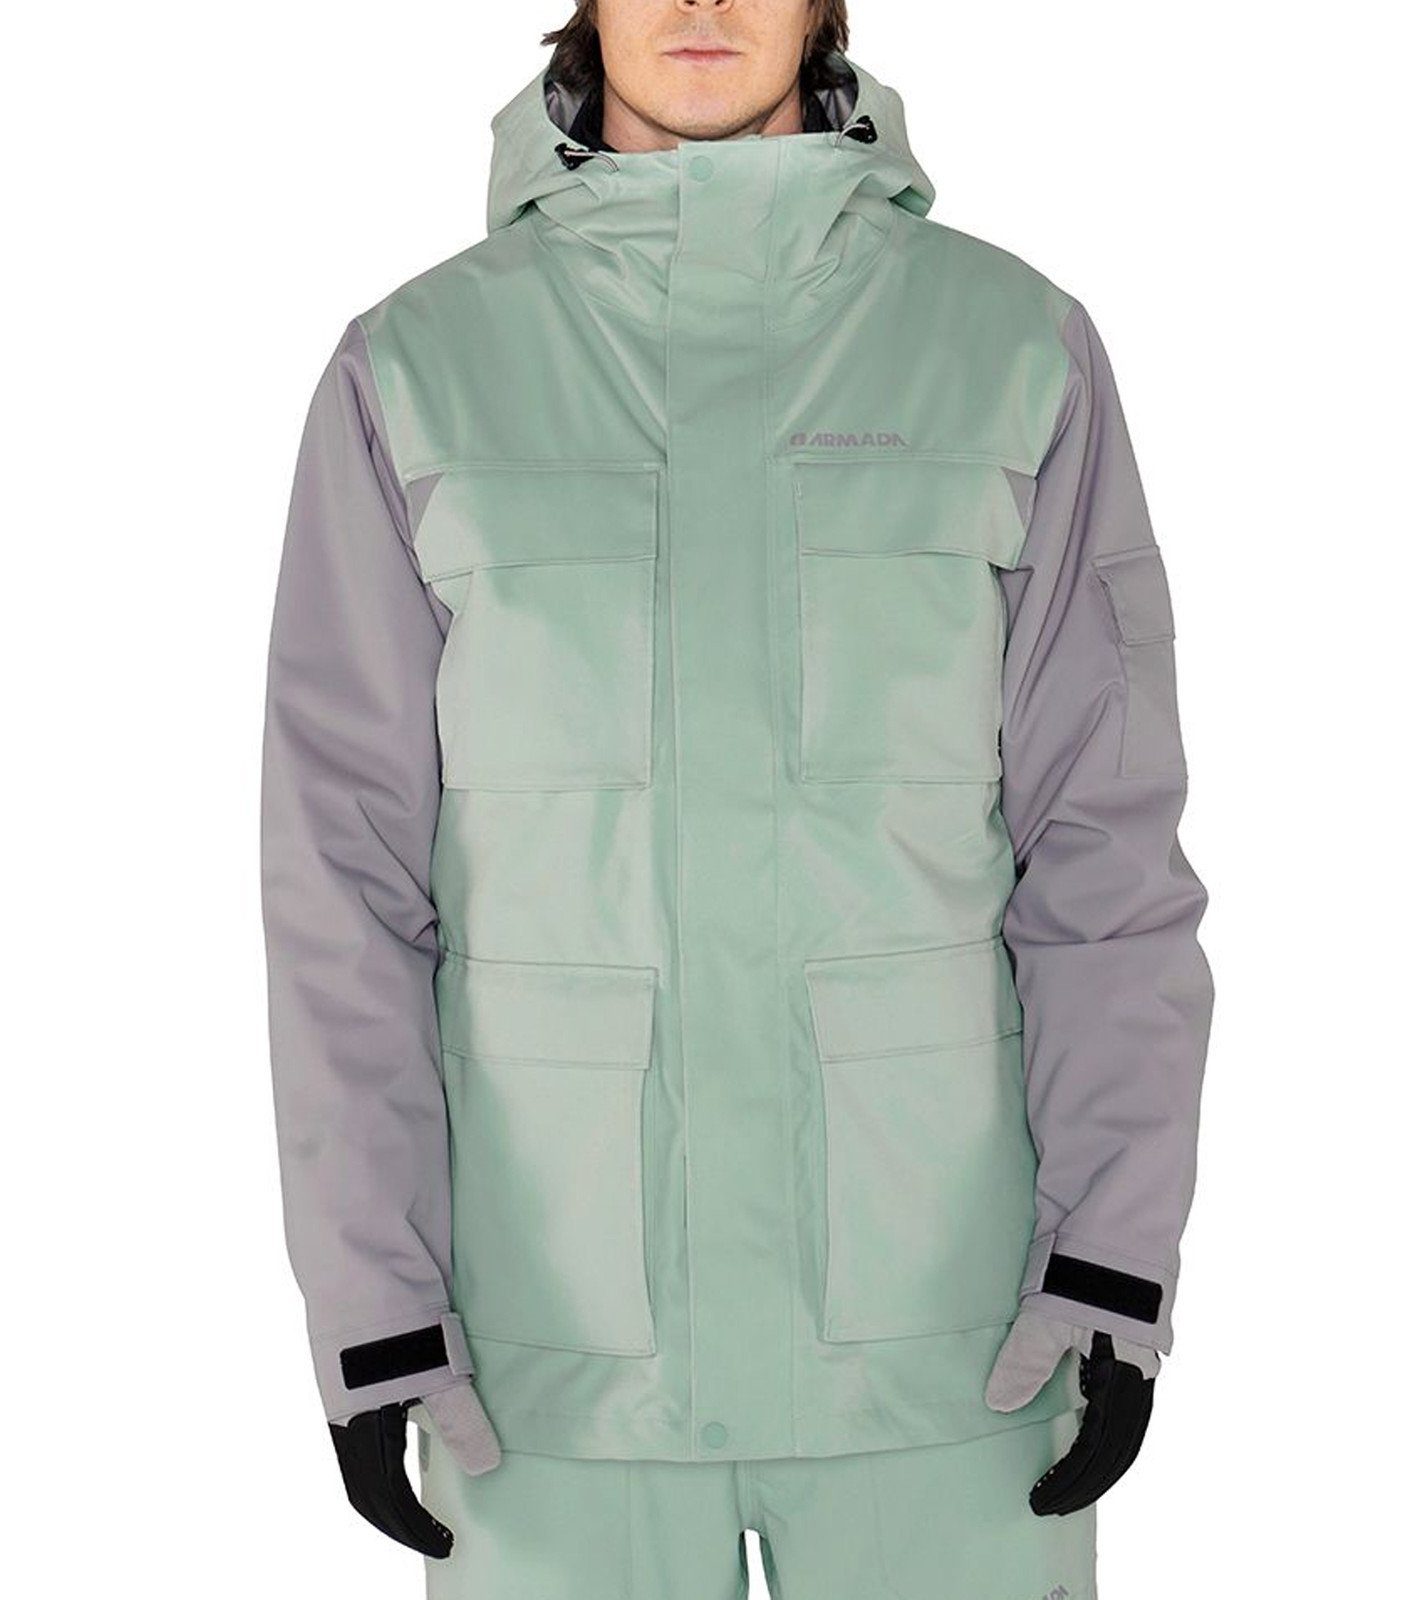 Armada Winterjacke »ARMADA Spearhead Ski-Jacke stylische Herren Freeride- Jacke mit reichlich Taschen Snowboard-Jacke Mint« online kaufen | OTTO